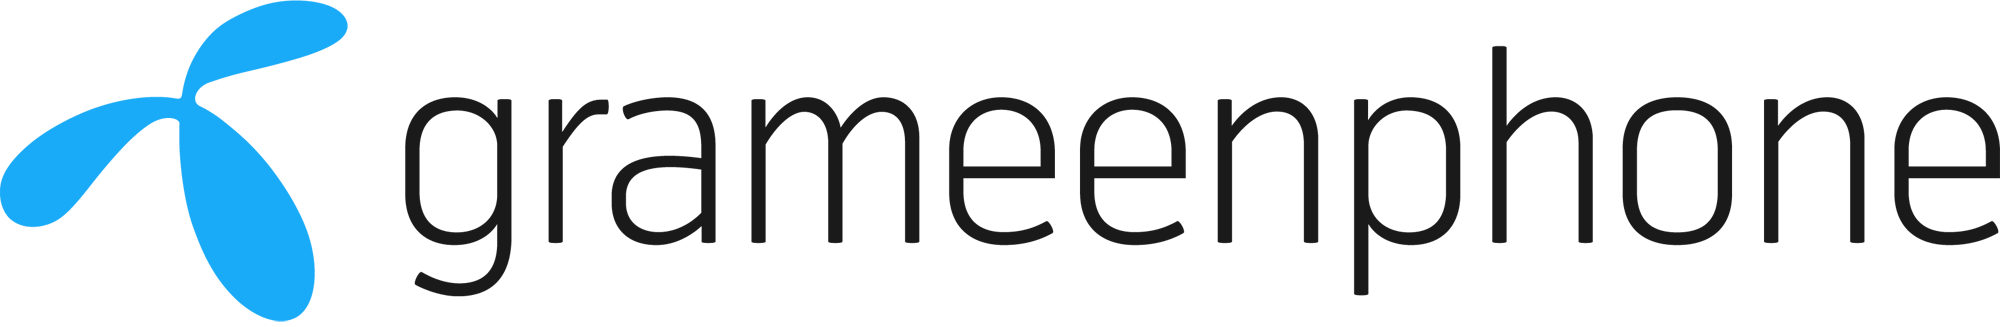 telenor logo vector